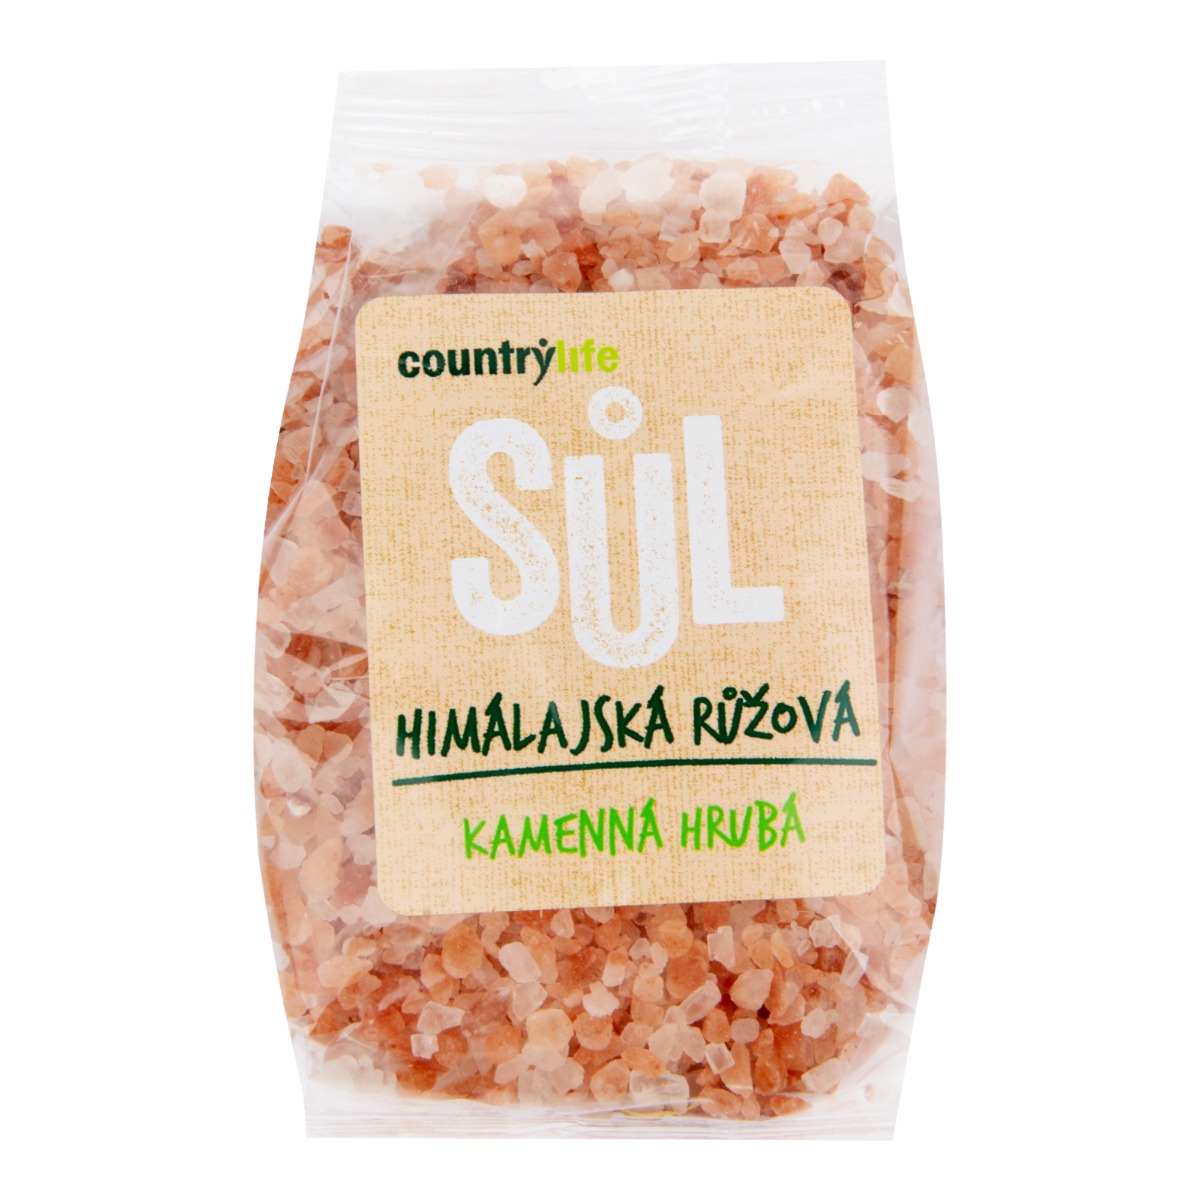 Country Life Sůl himálajská růžová hrubá 500 g Country Life